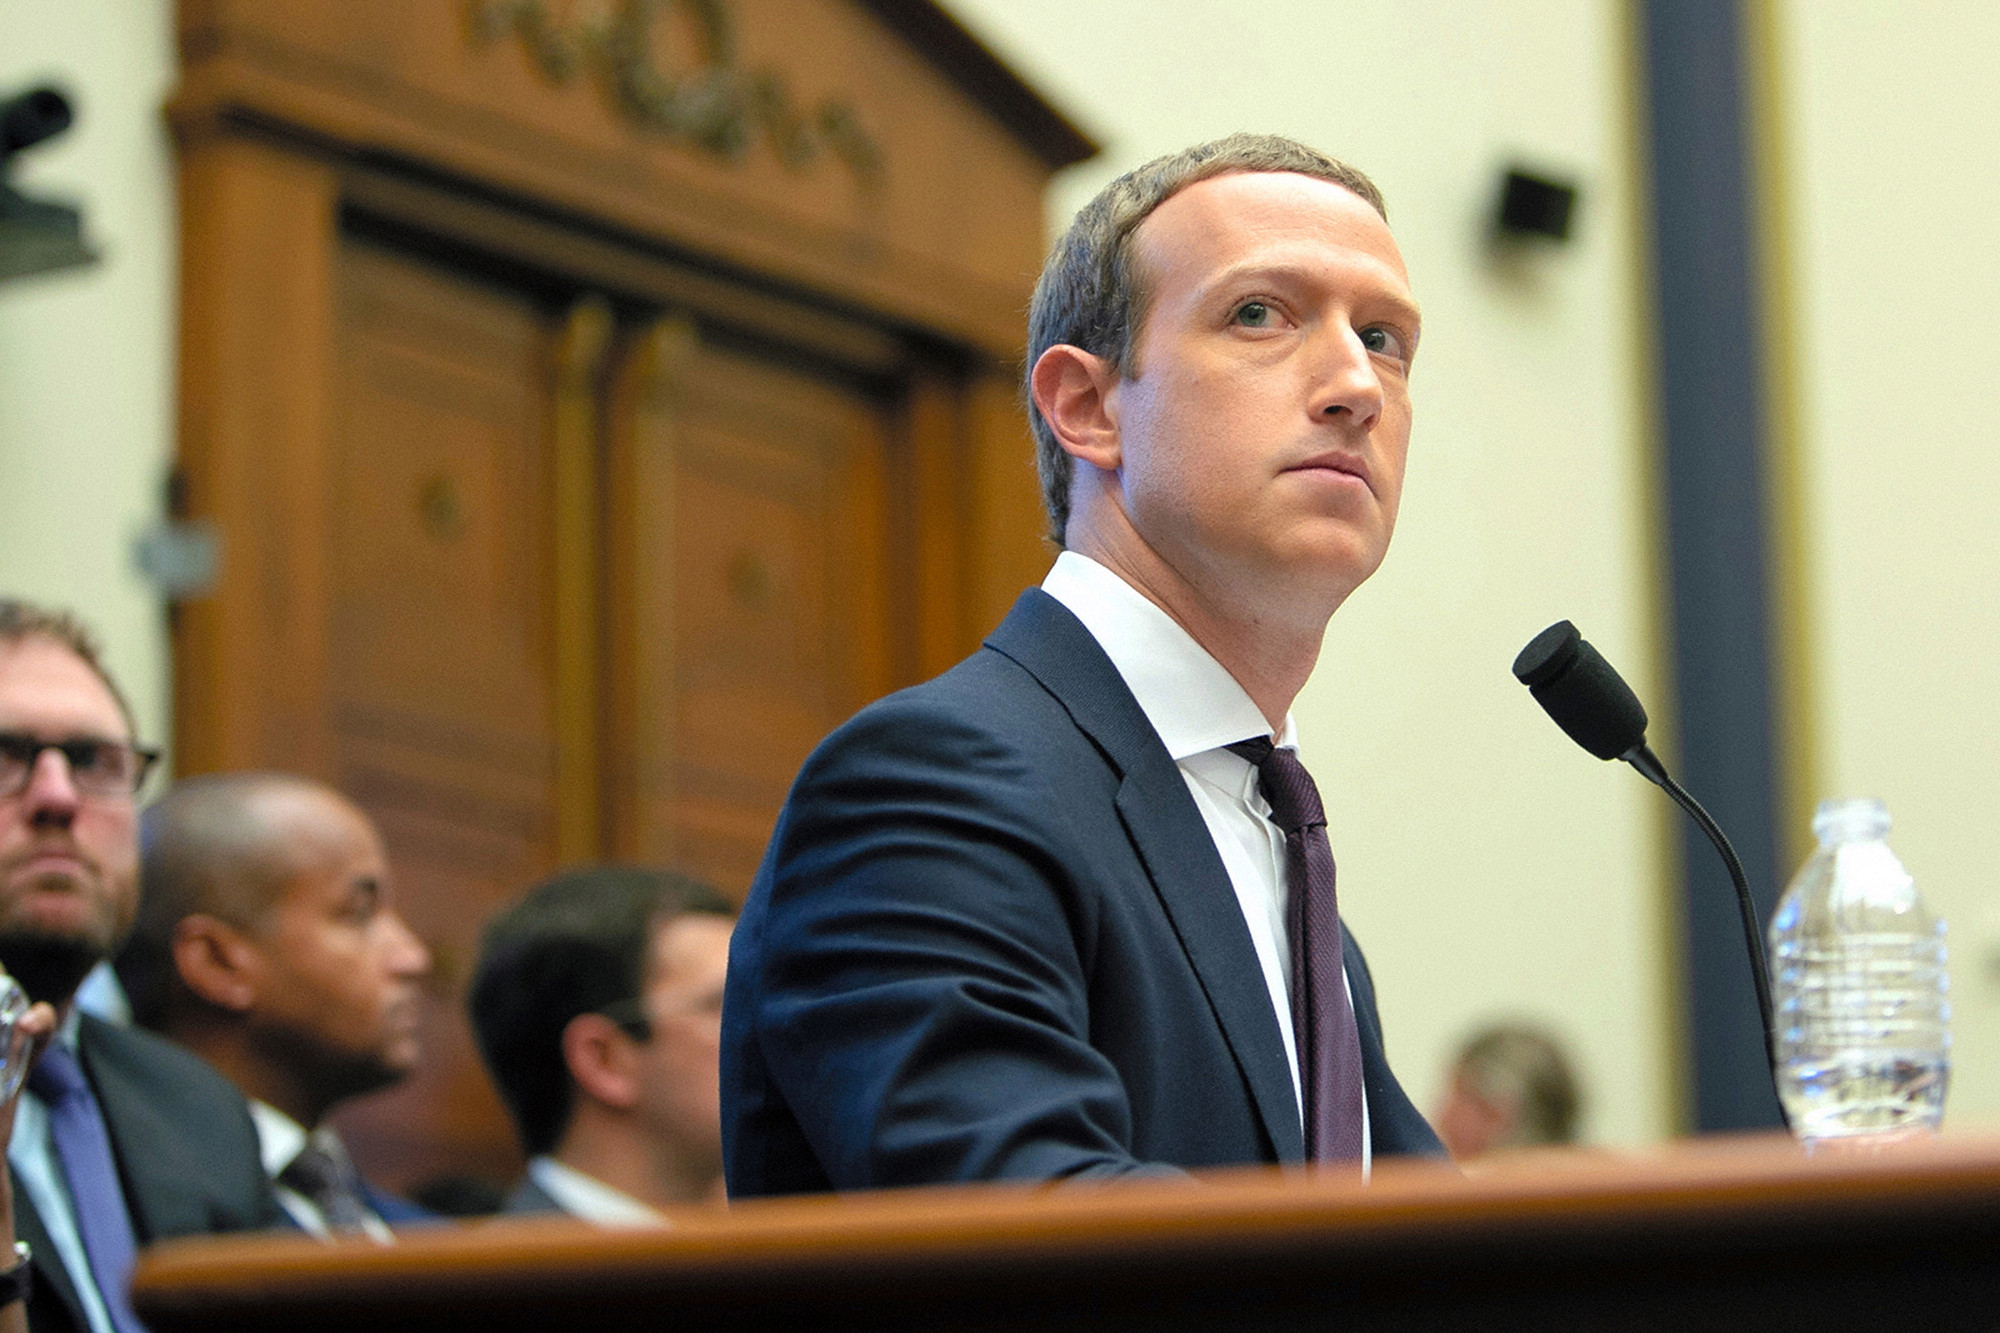 Le cofondateur et PDG de Facebook, Mark Zuckerberg, a témoigné devant le House Financial Services Committee à Washington le 23 octobre 2019. -- L'Asahi Shimbun via Getty Images